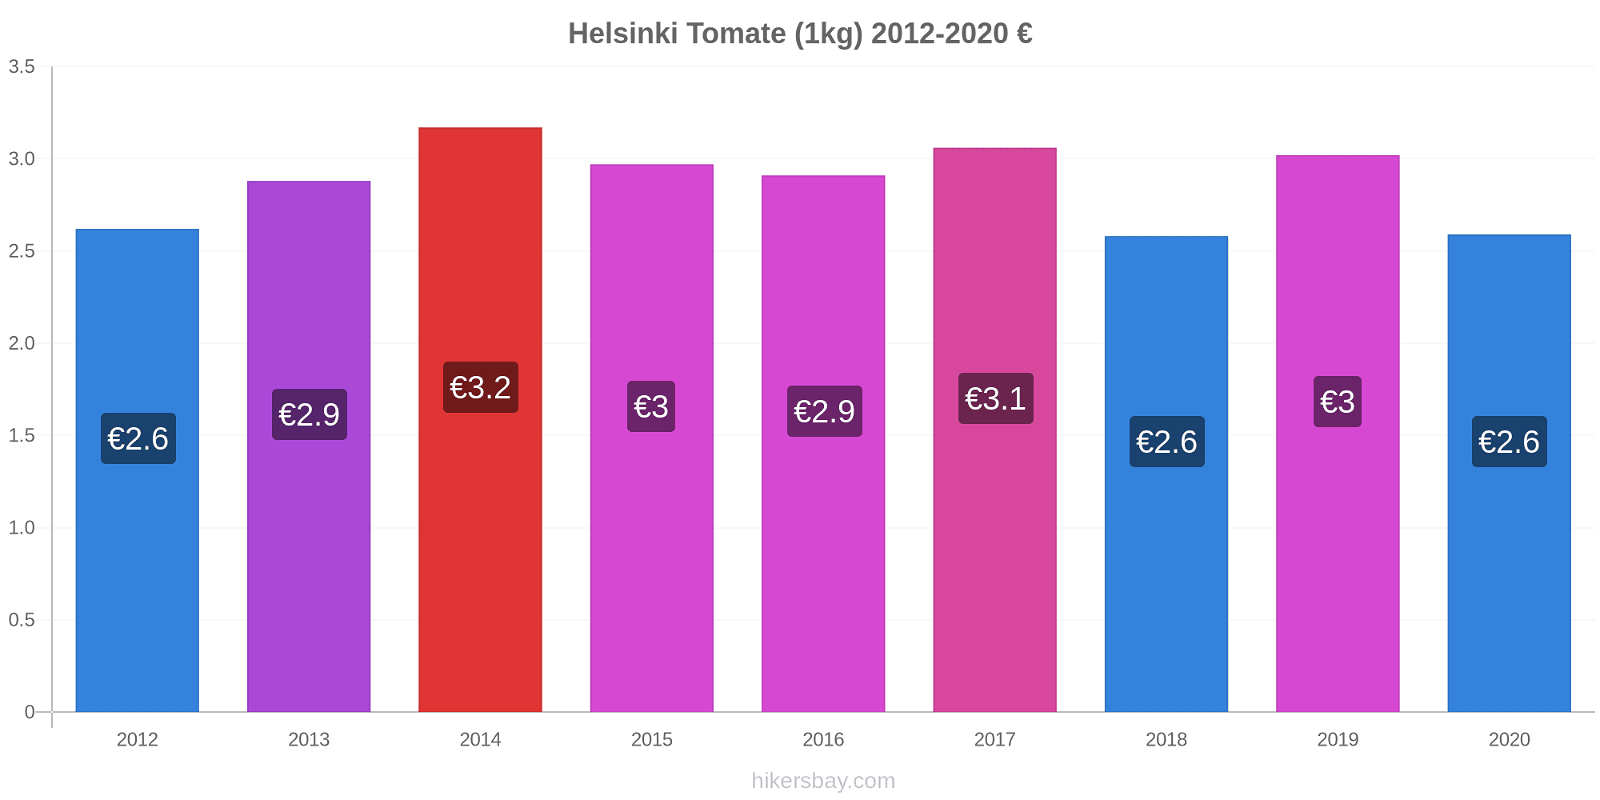 Helsinki modificări de preț Tomate (1kg) hikersbay.com